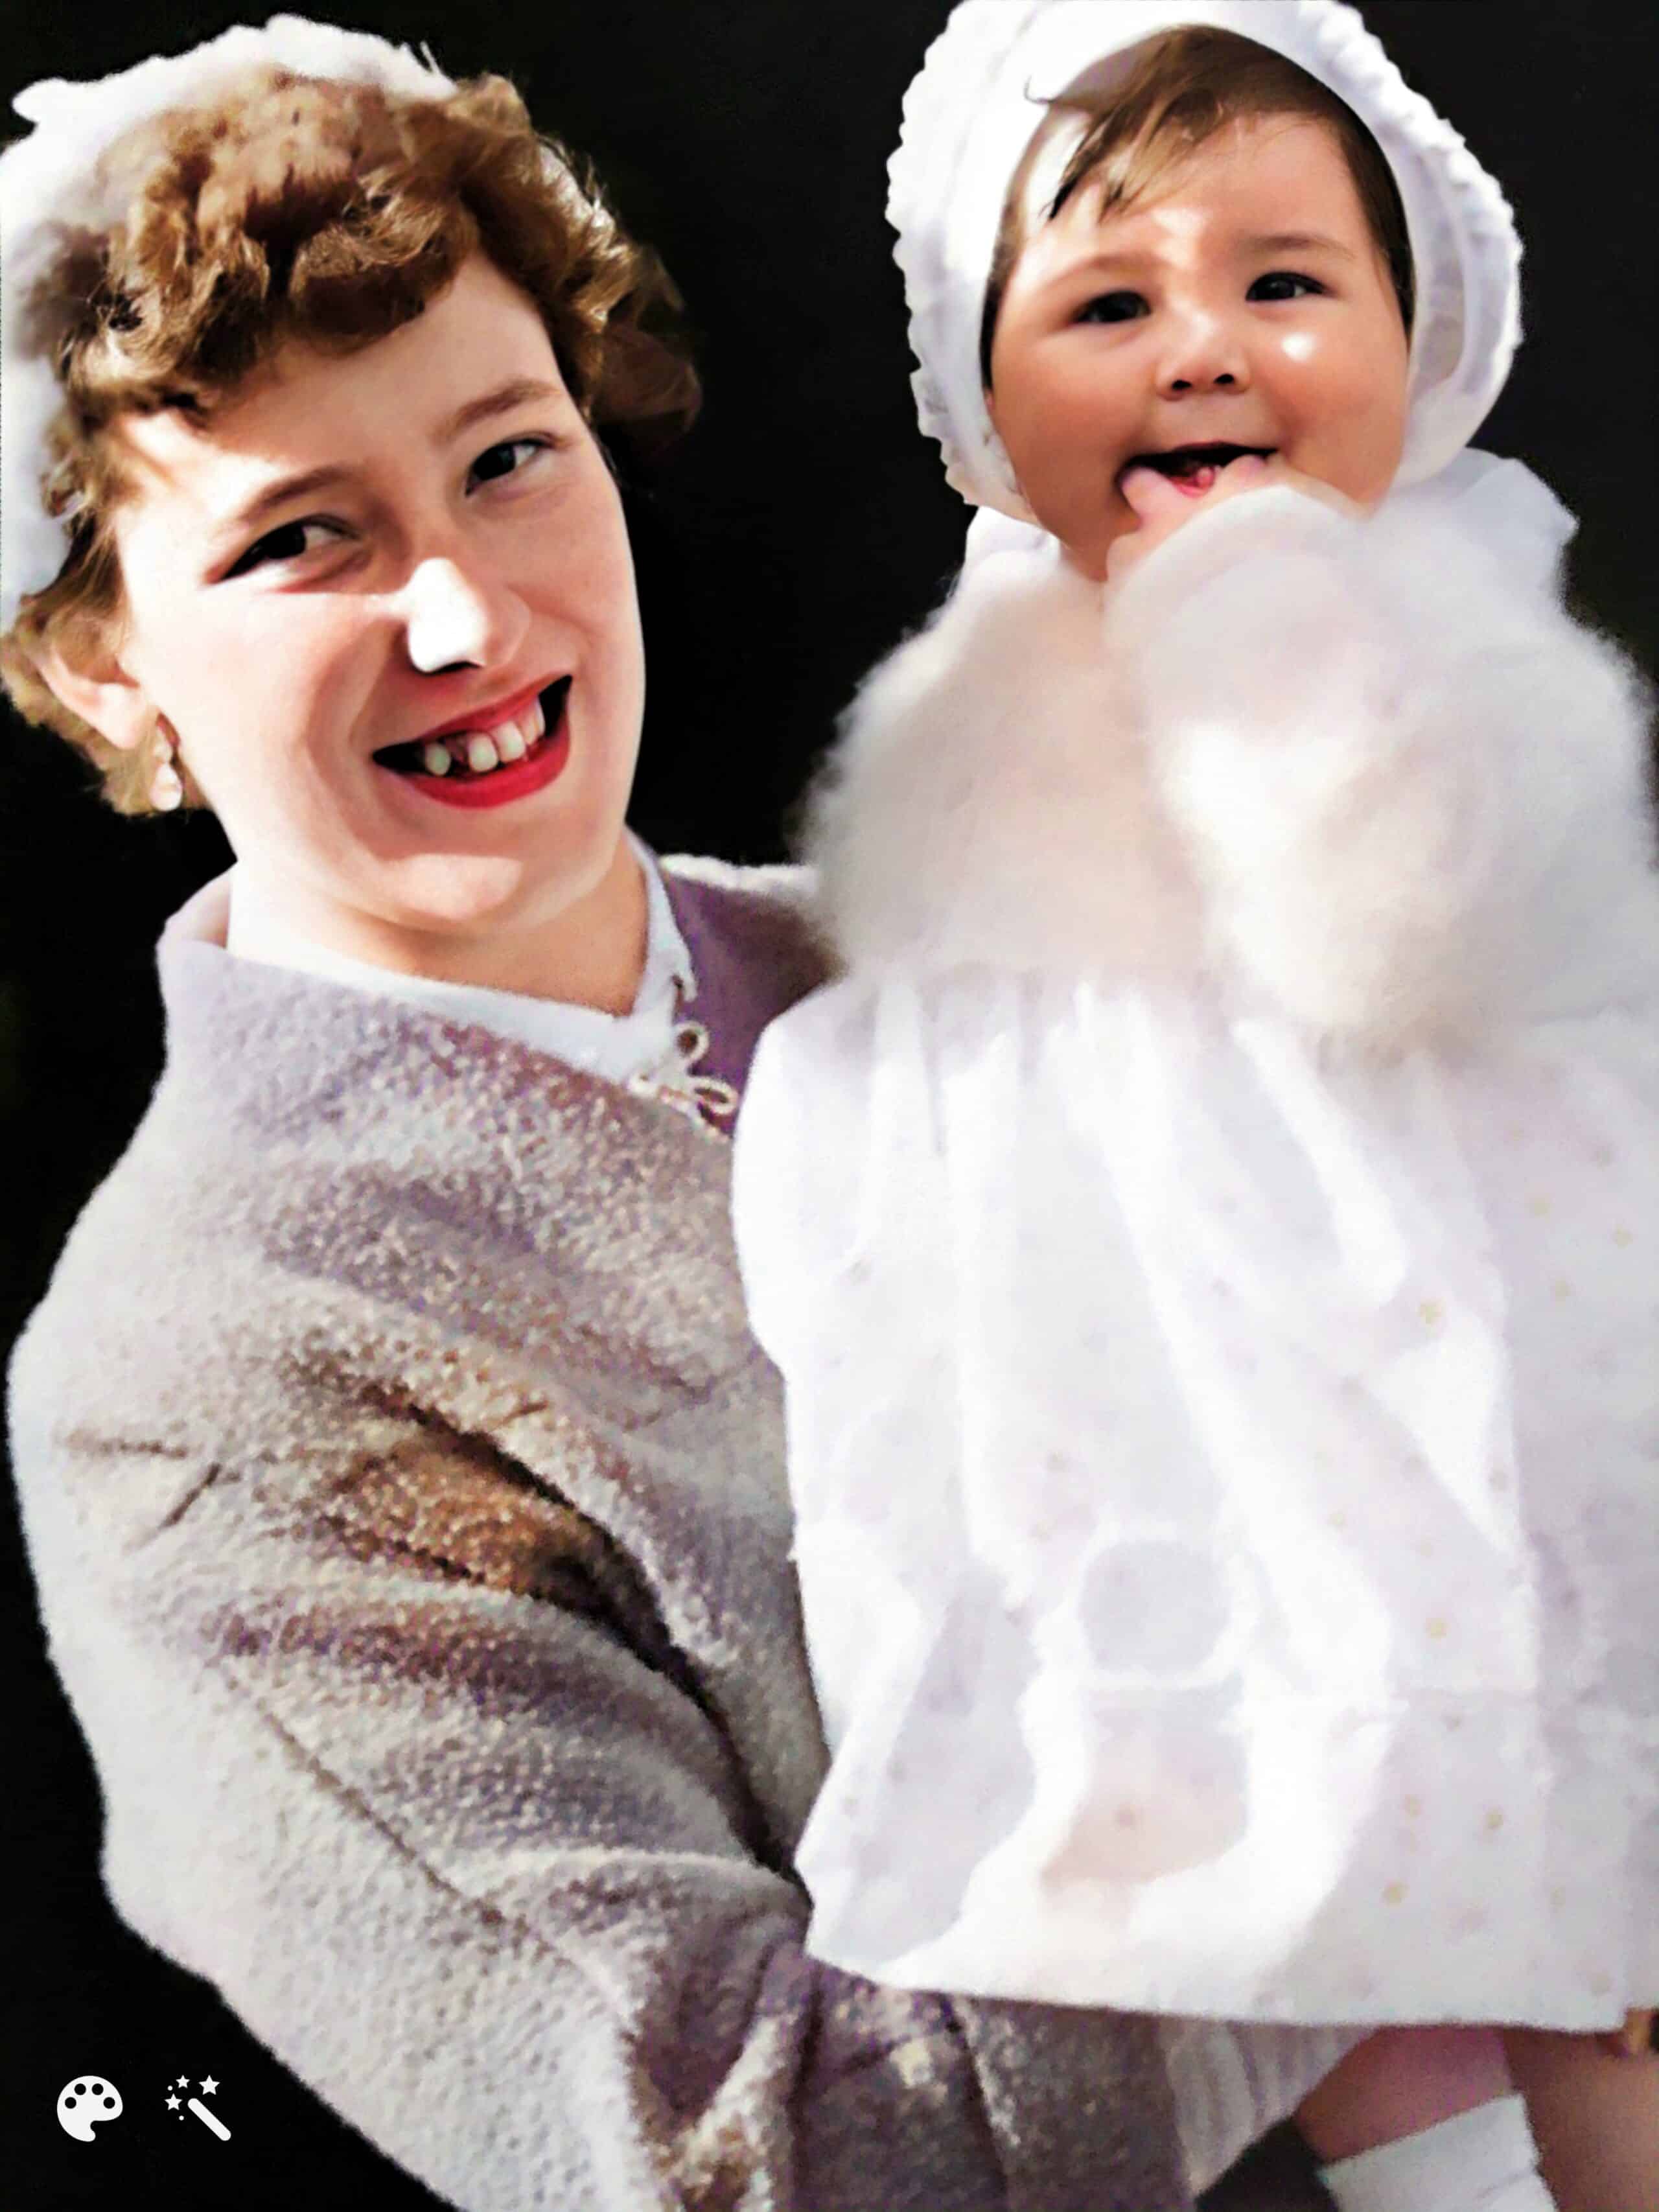 Julie Mamo som baby sammen med hennes adoptivmor Mavis. Bildet er fargelagt og forbedret av MyHeritage.